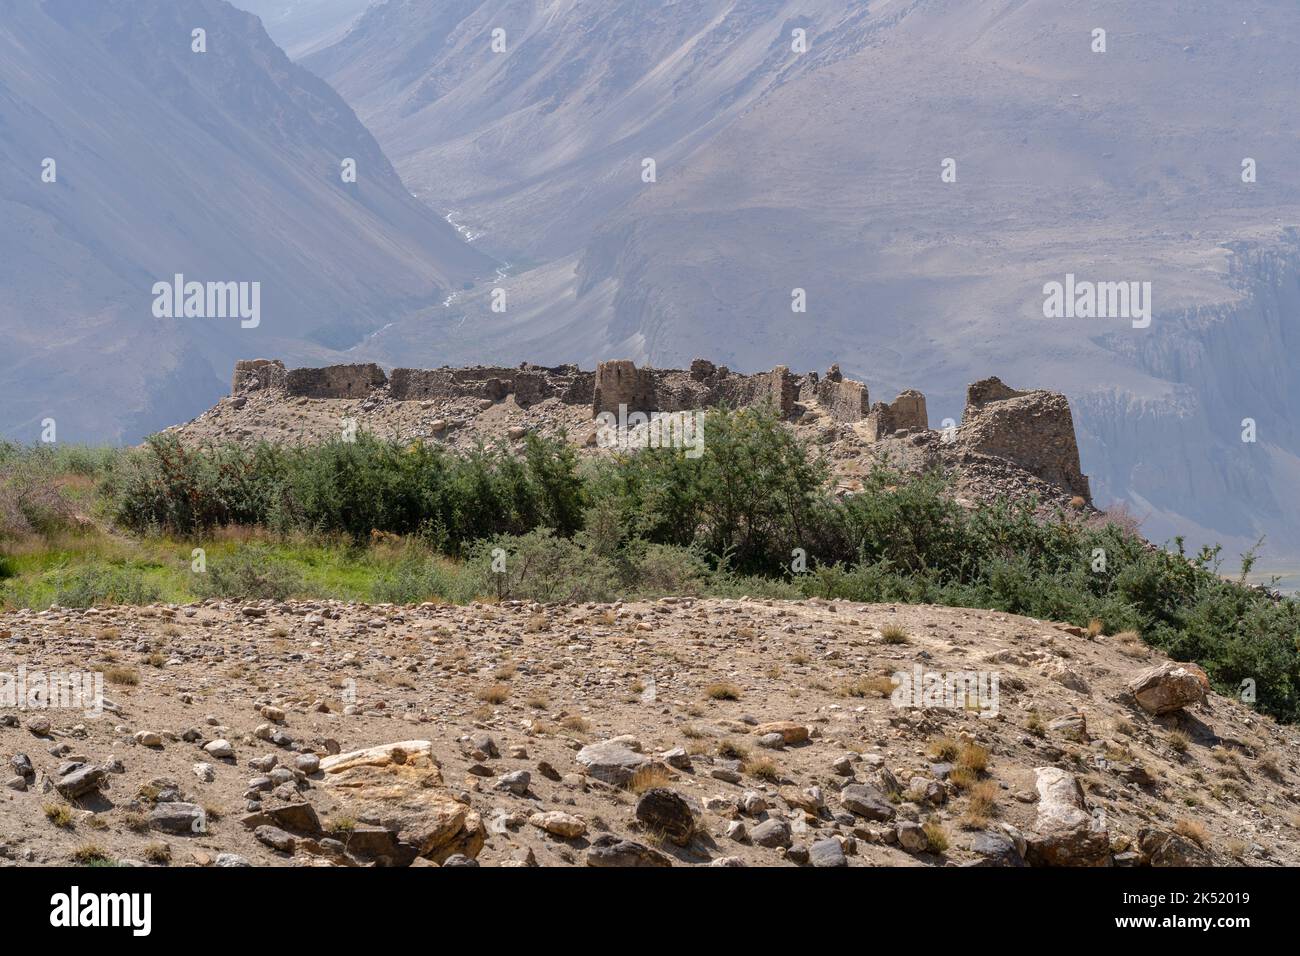 Landschaftsansicht der alten Seidenstraße Yamchun Festung im Wachan Korridor mit Afghanistan Berge im Hintergrund, Gorno-Badakshan, Tadschikistan Stockfoto